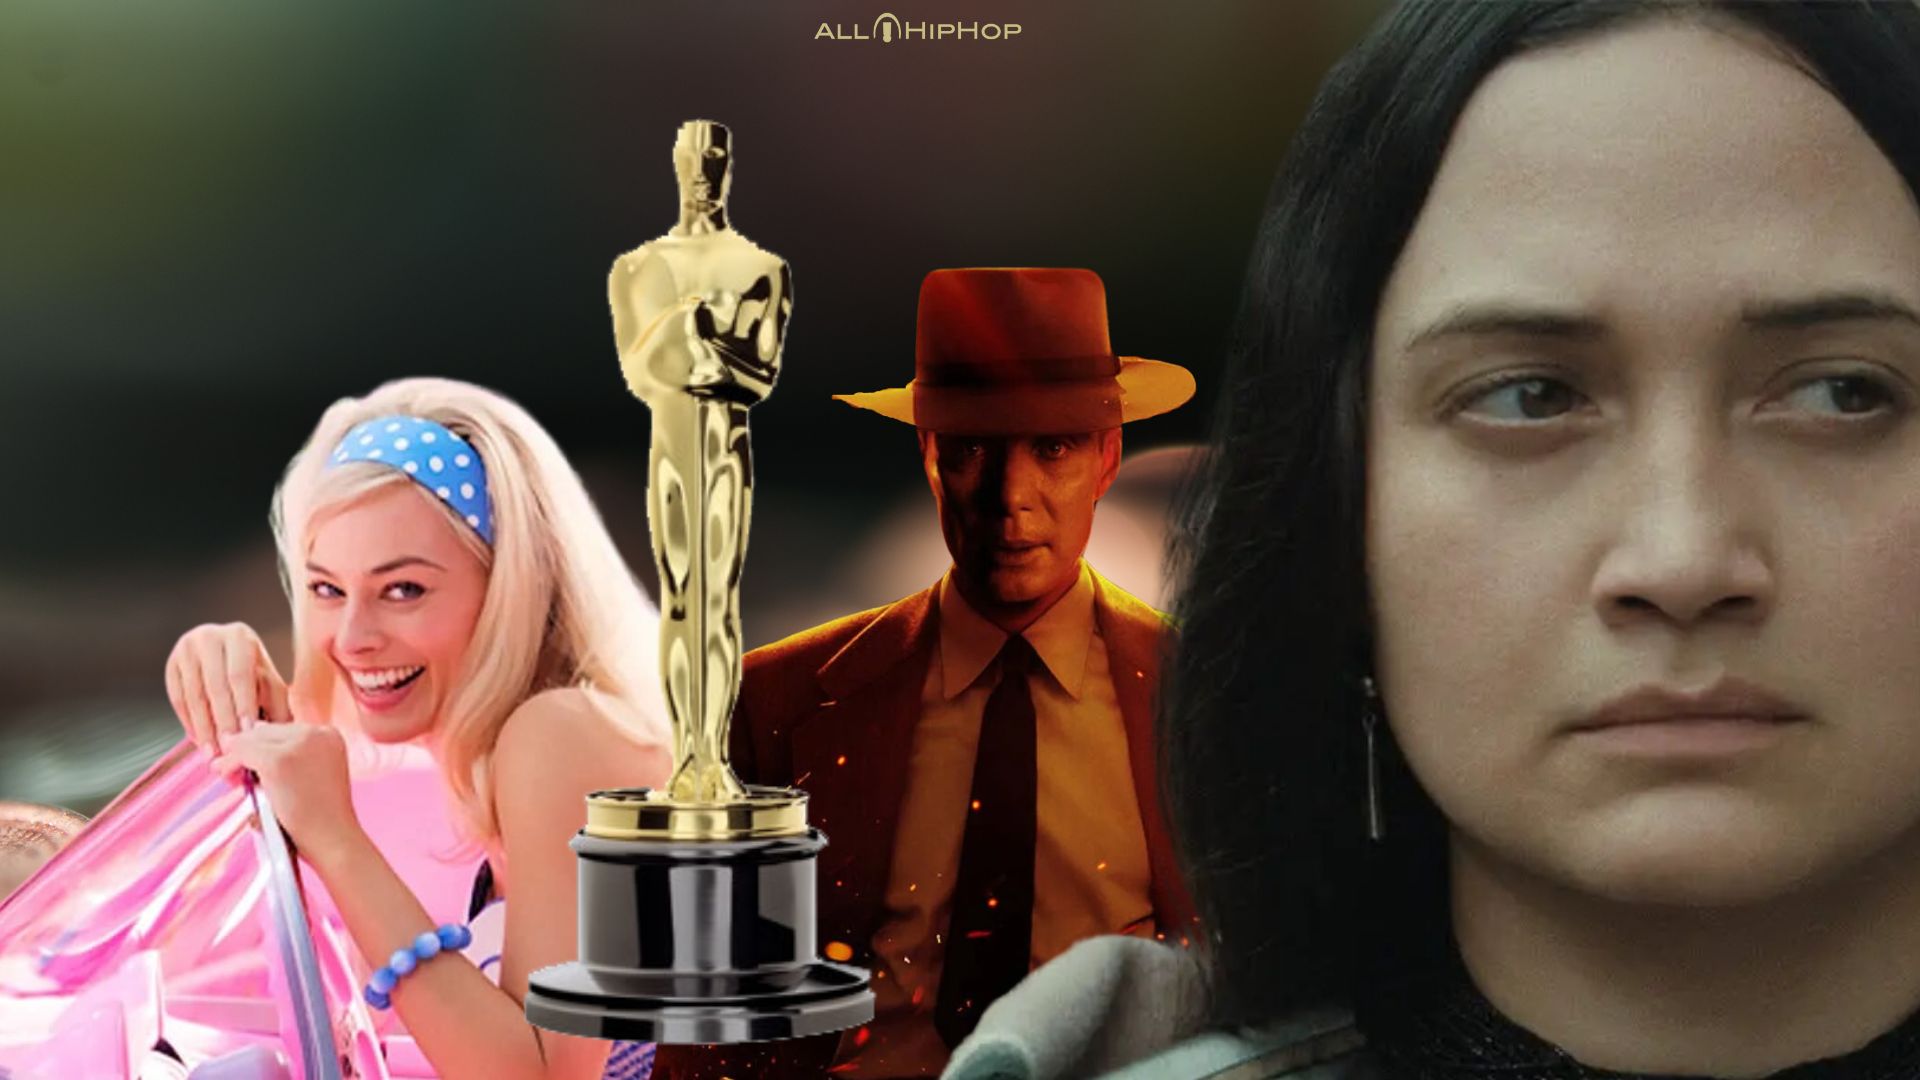 The Academy Awards, The Oscars